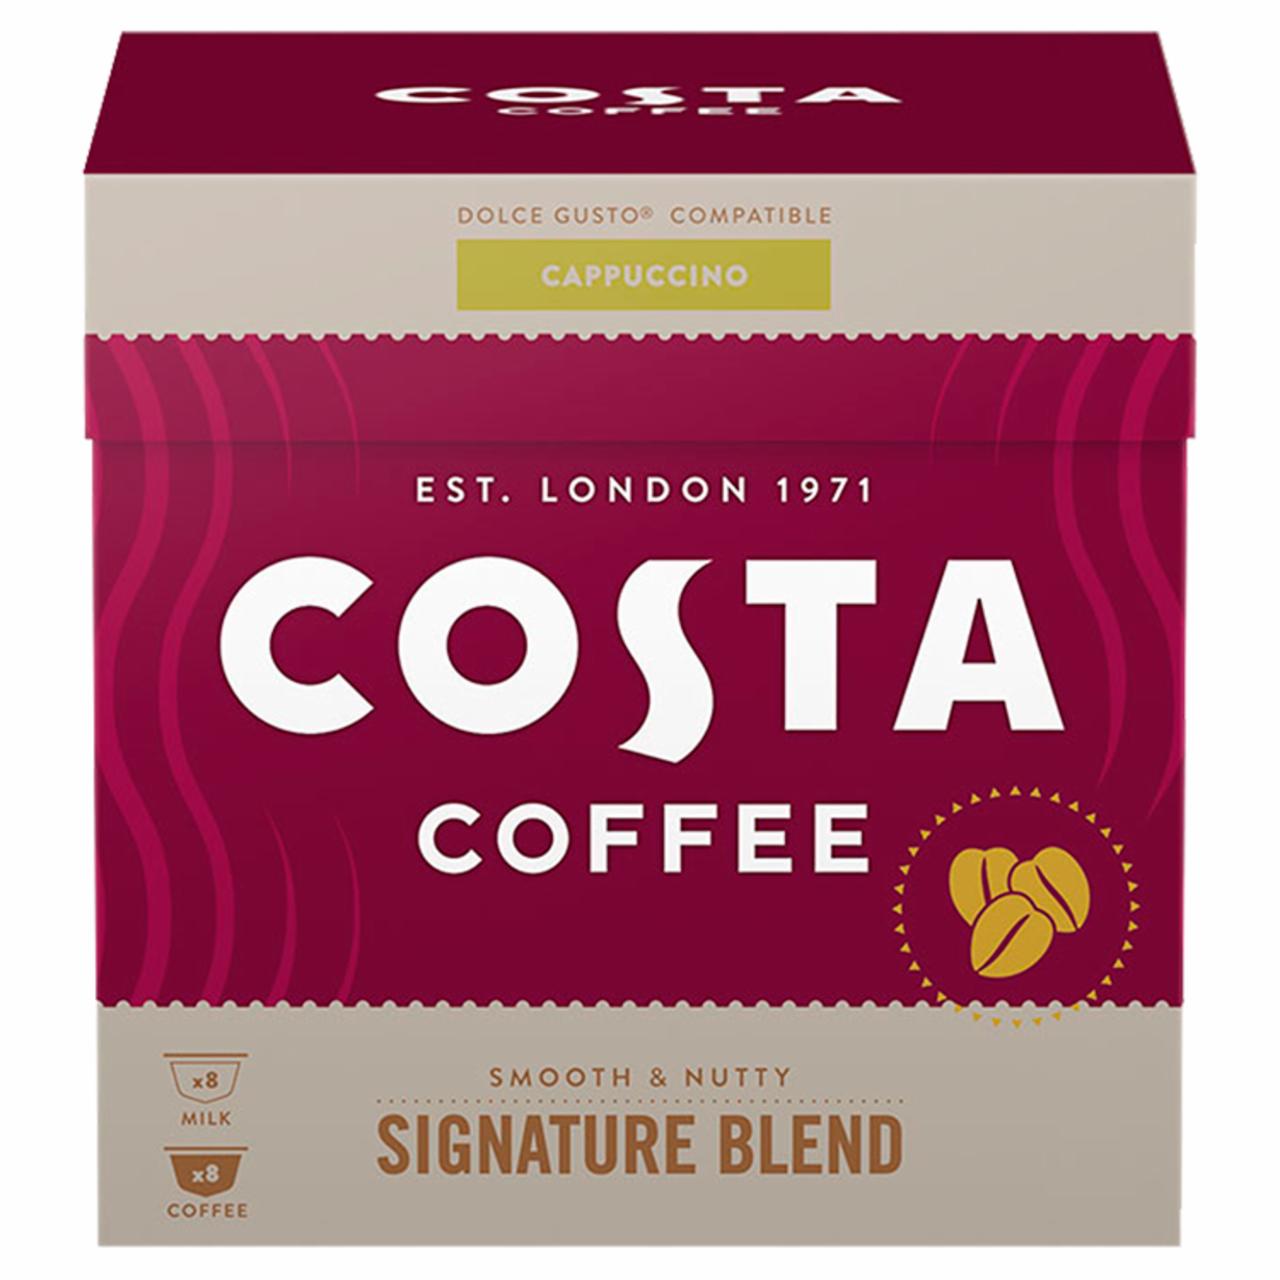 Zdjęcia - Costa Coffee Signature Blend Cappuccino Kawa w kapsułkach 146,4 g (8 x 7,6 g i 8 x 10,7 g)